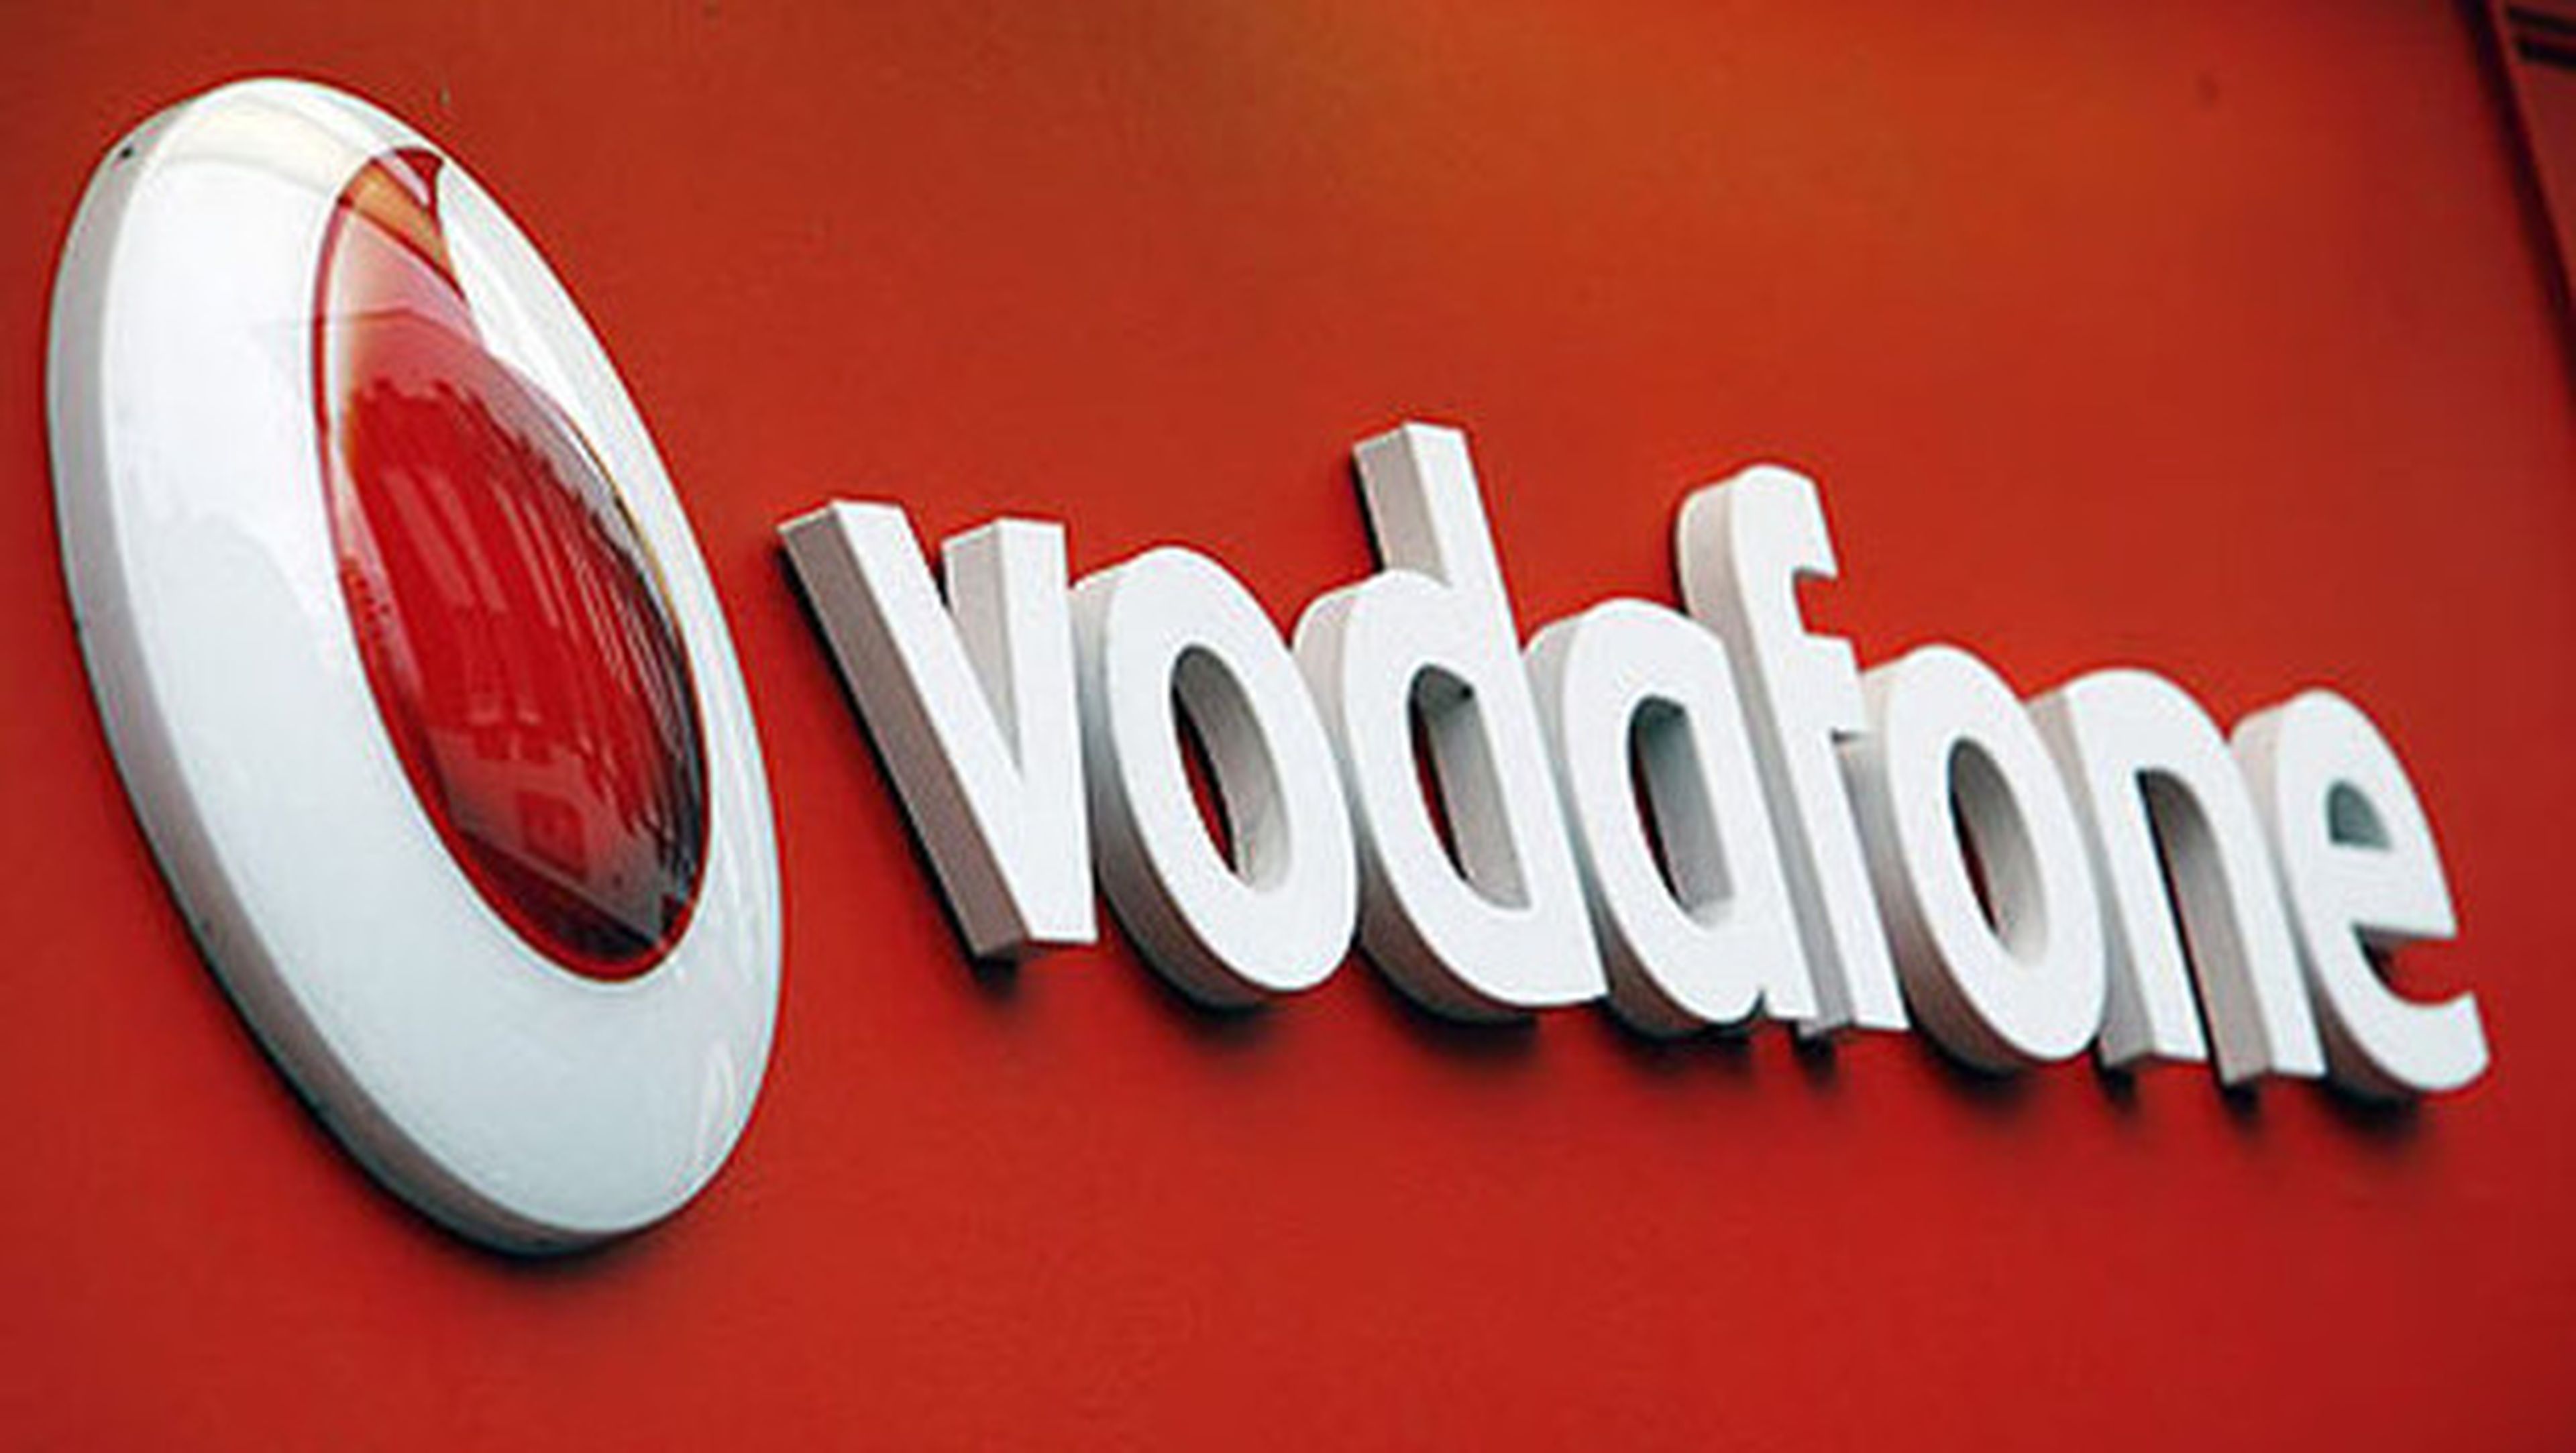 Precio de los datos con Vodafone.